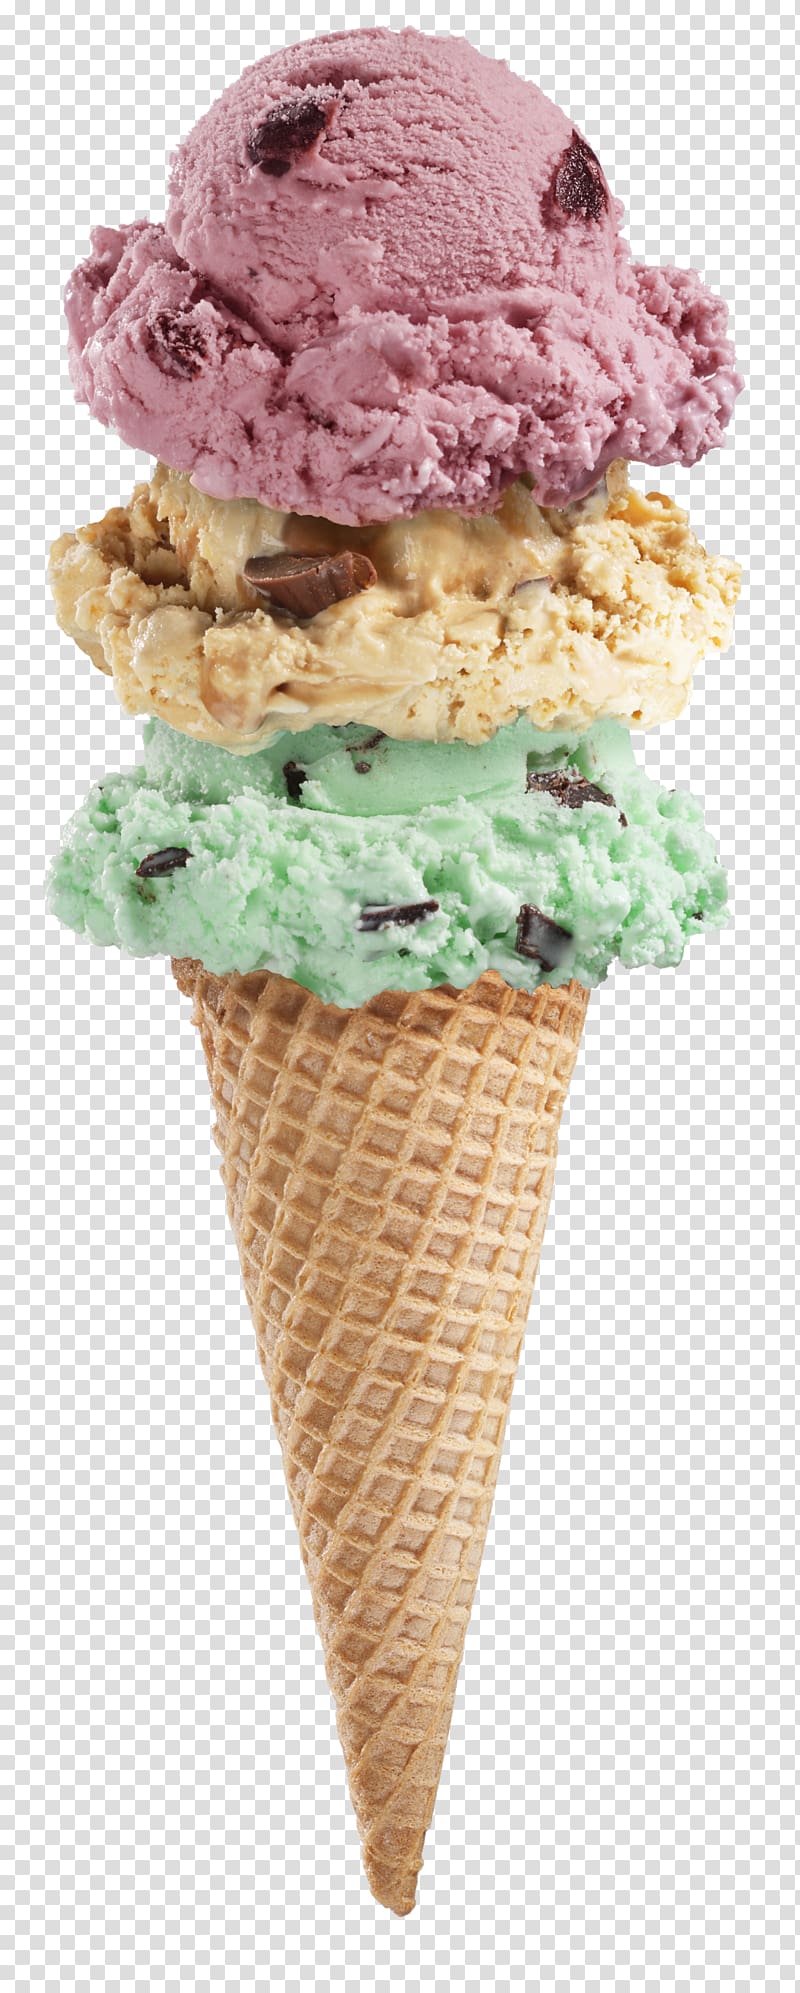 Ice Cream Cones Sundae Ice cream parlor, ice cream transparent background PNG clipart